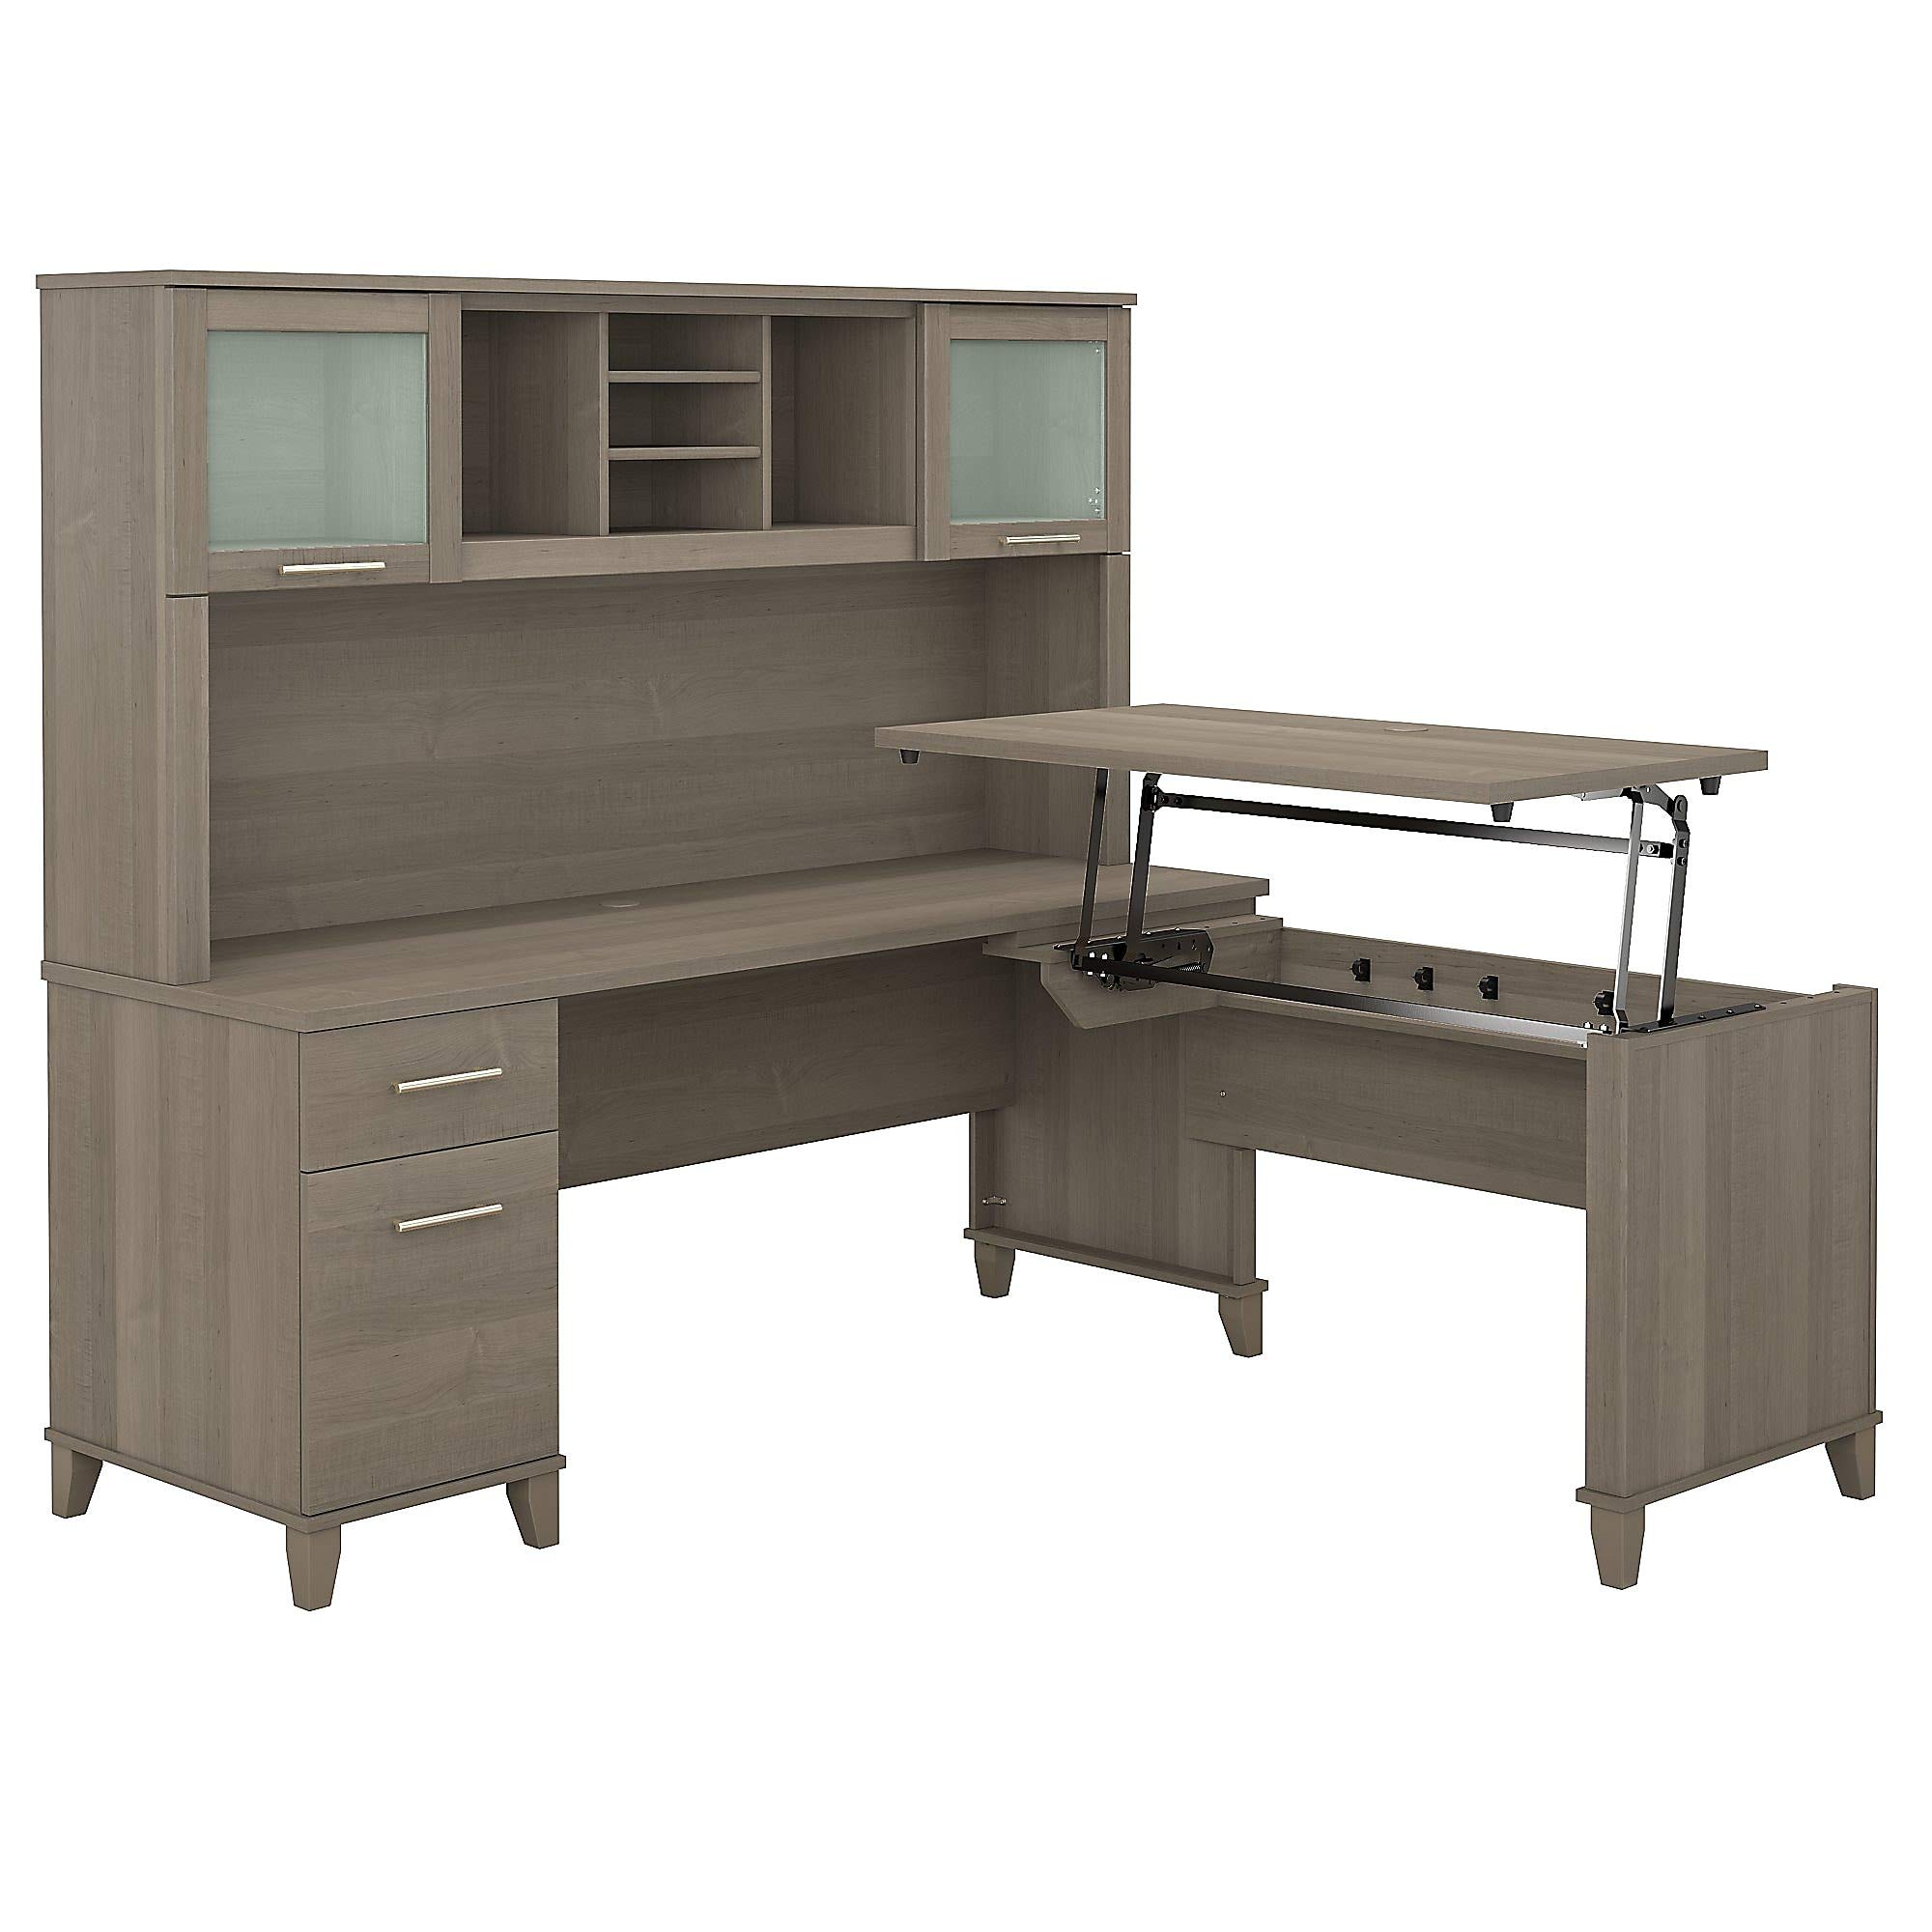 Bush Furniture समरसेट 3 पोजीशन हच के साथ सिट टू स्टैंड एल आकार का डेस्क